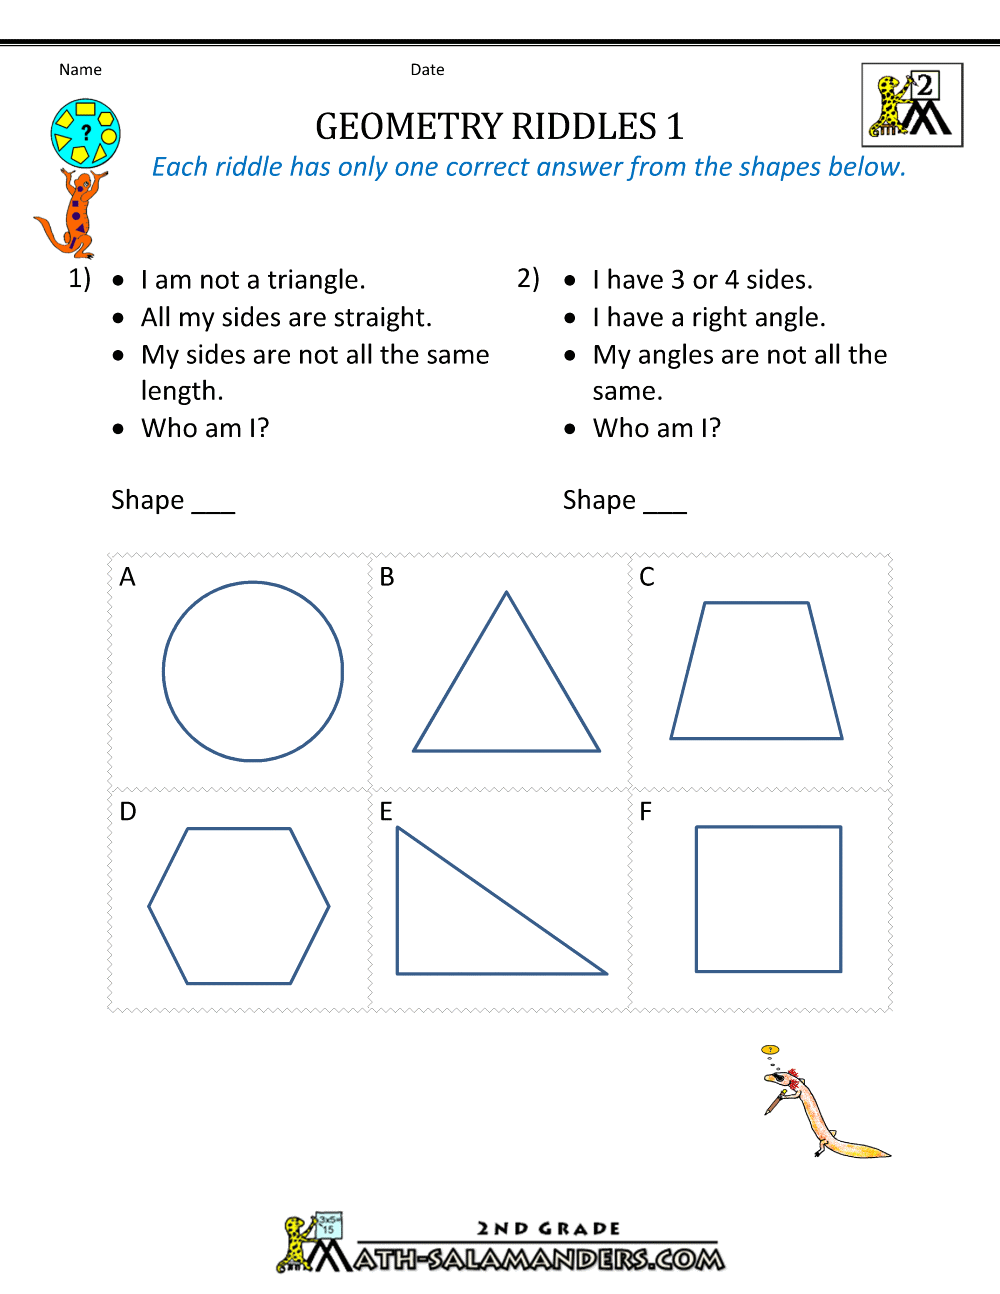 Free Geometry Worksheets 23nd Grade Geometry Riddles With 2nd Grade Geometry Worksheet